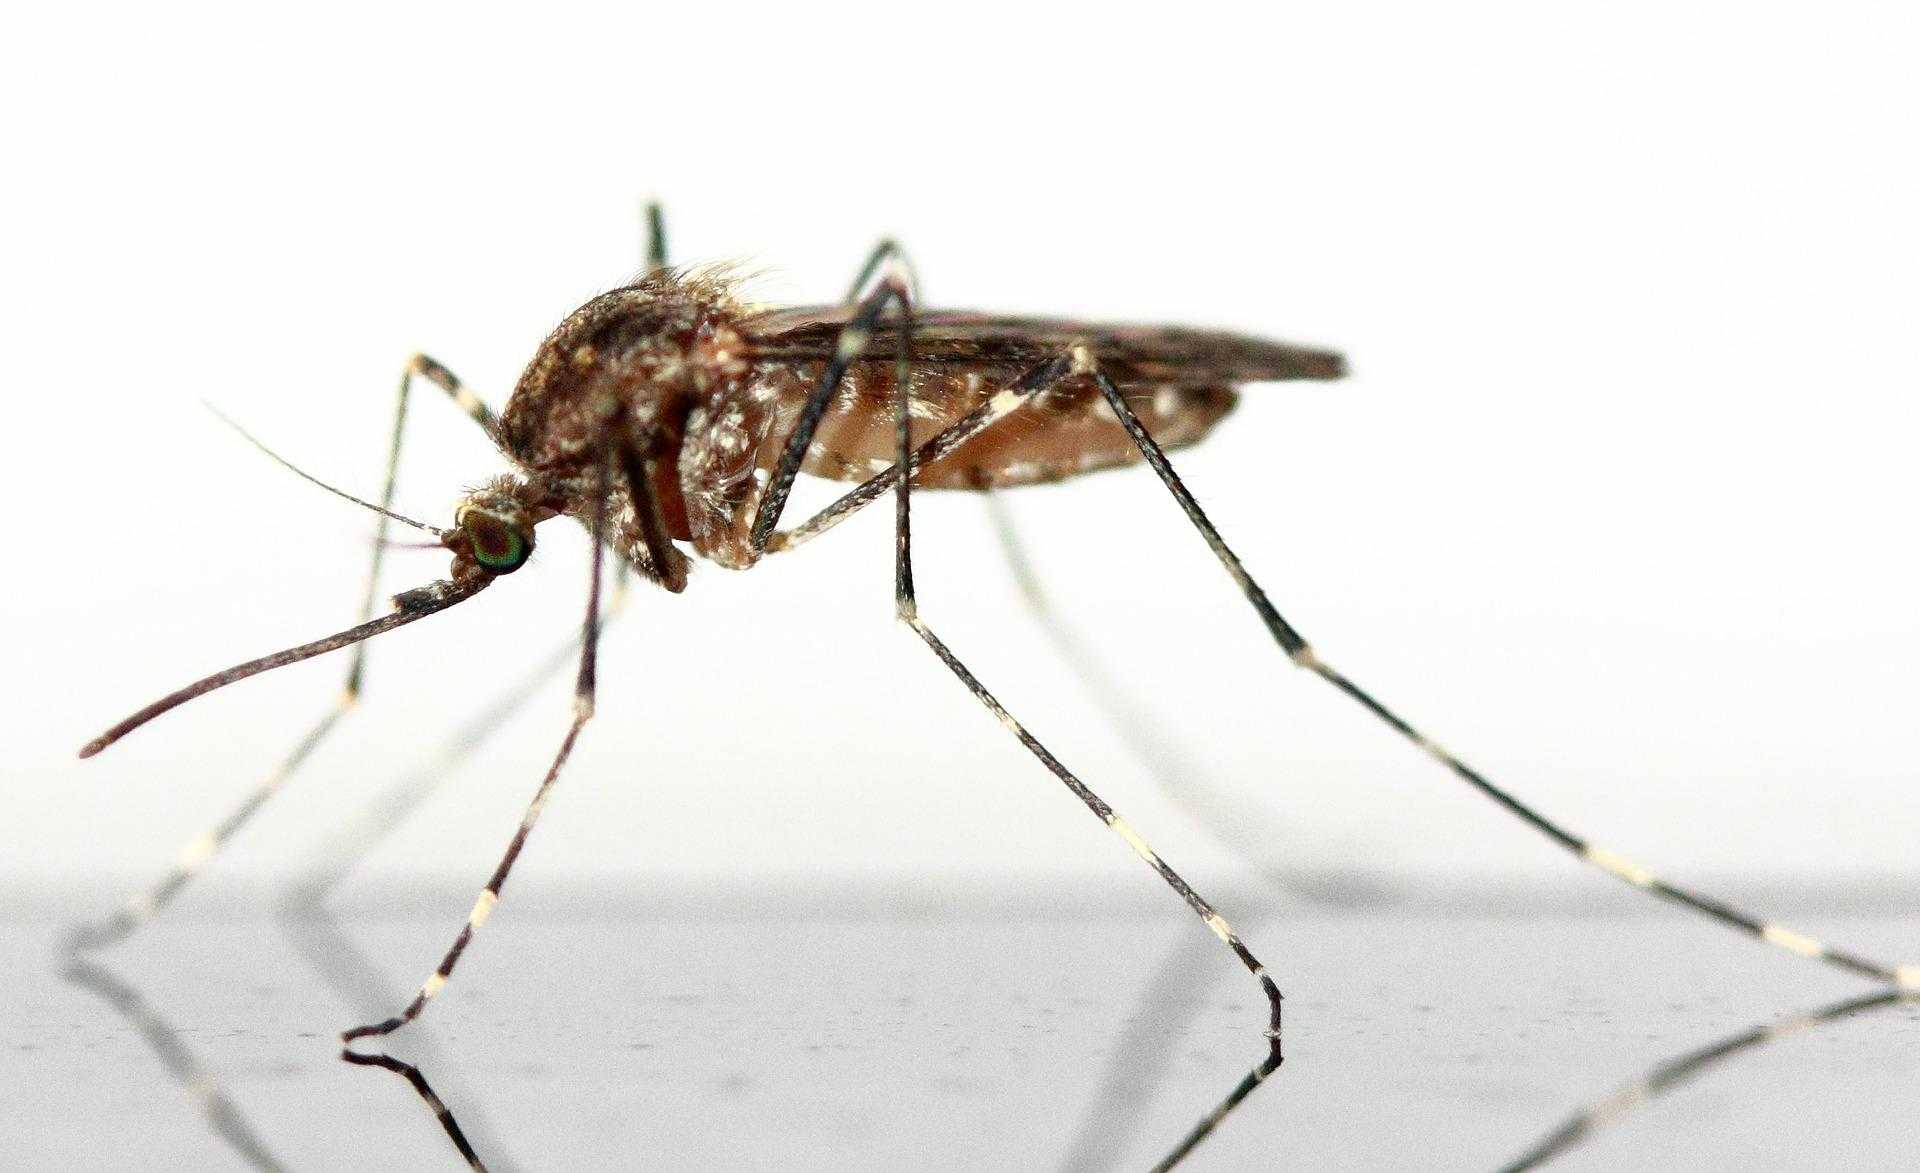 Скорость мухи в полёте: какая максимальная и для чего мухам большая скорость?